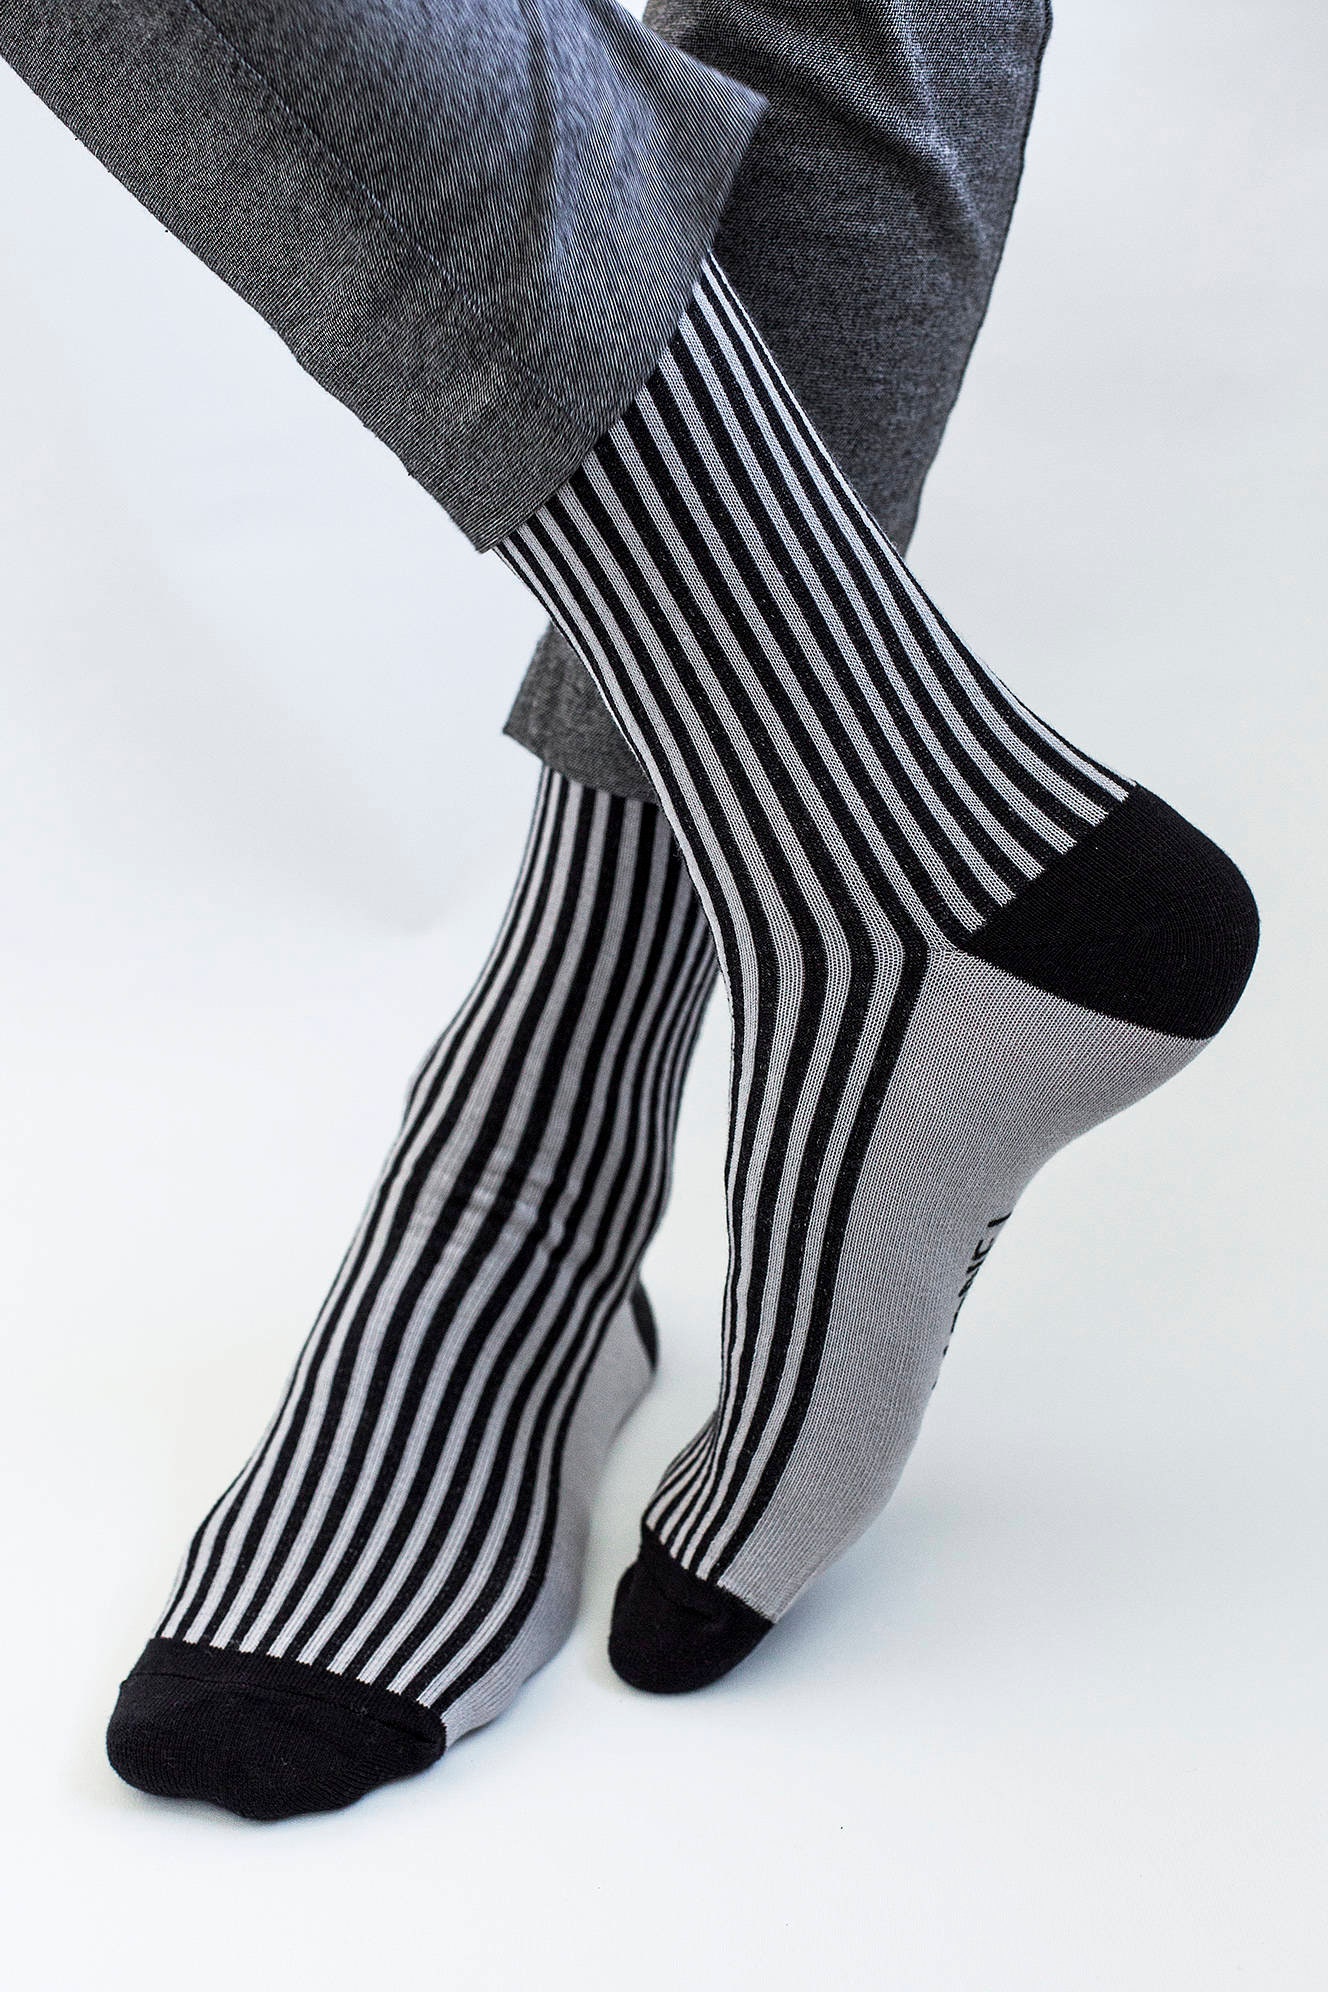 Chaussettes chaudes laine rayée extra fines noir et gris homme